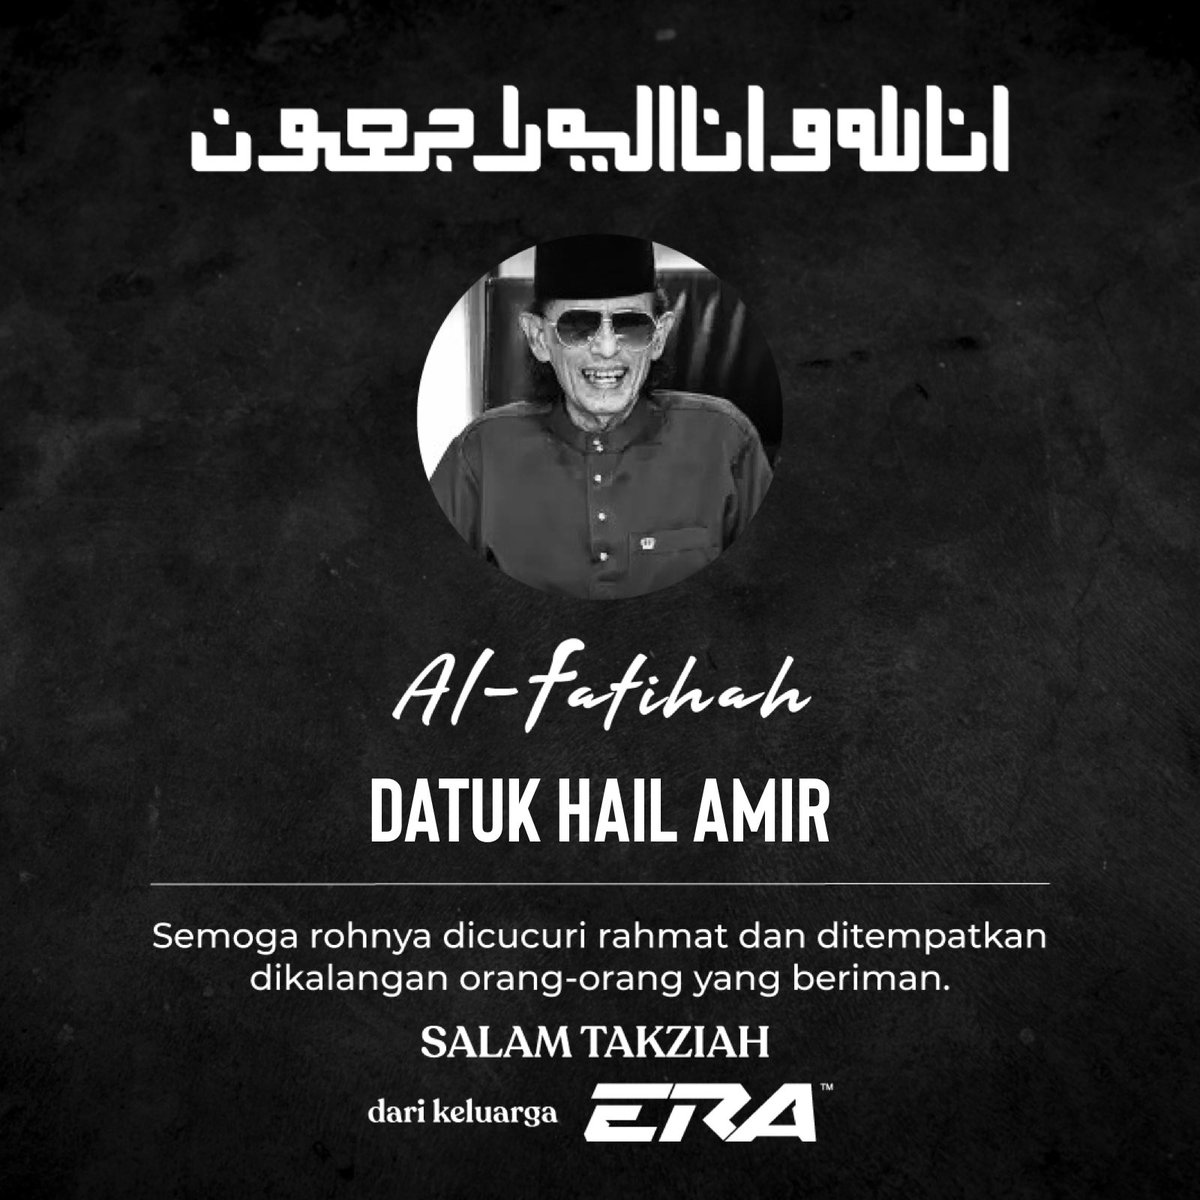 Inna Lillahi wa inna ilayhi raji’un. Kita menerima berita pemergian penyanyi Datuk Hail Amir yang telah ke rahmatullah sebentar tadi. Salam takziah buat keluarga dan sama-sama kita sedekahkan Al-Fatihah. #sharERA